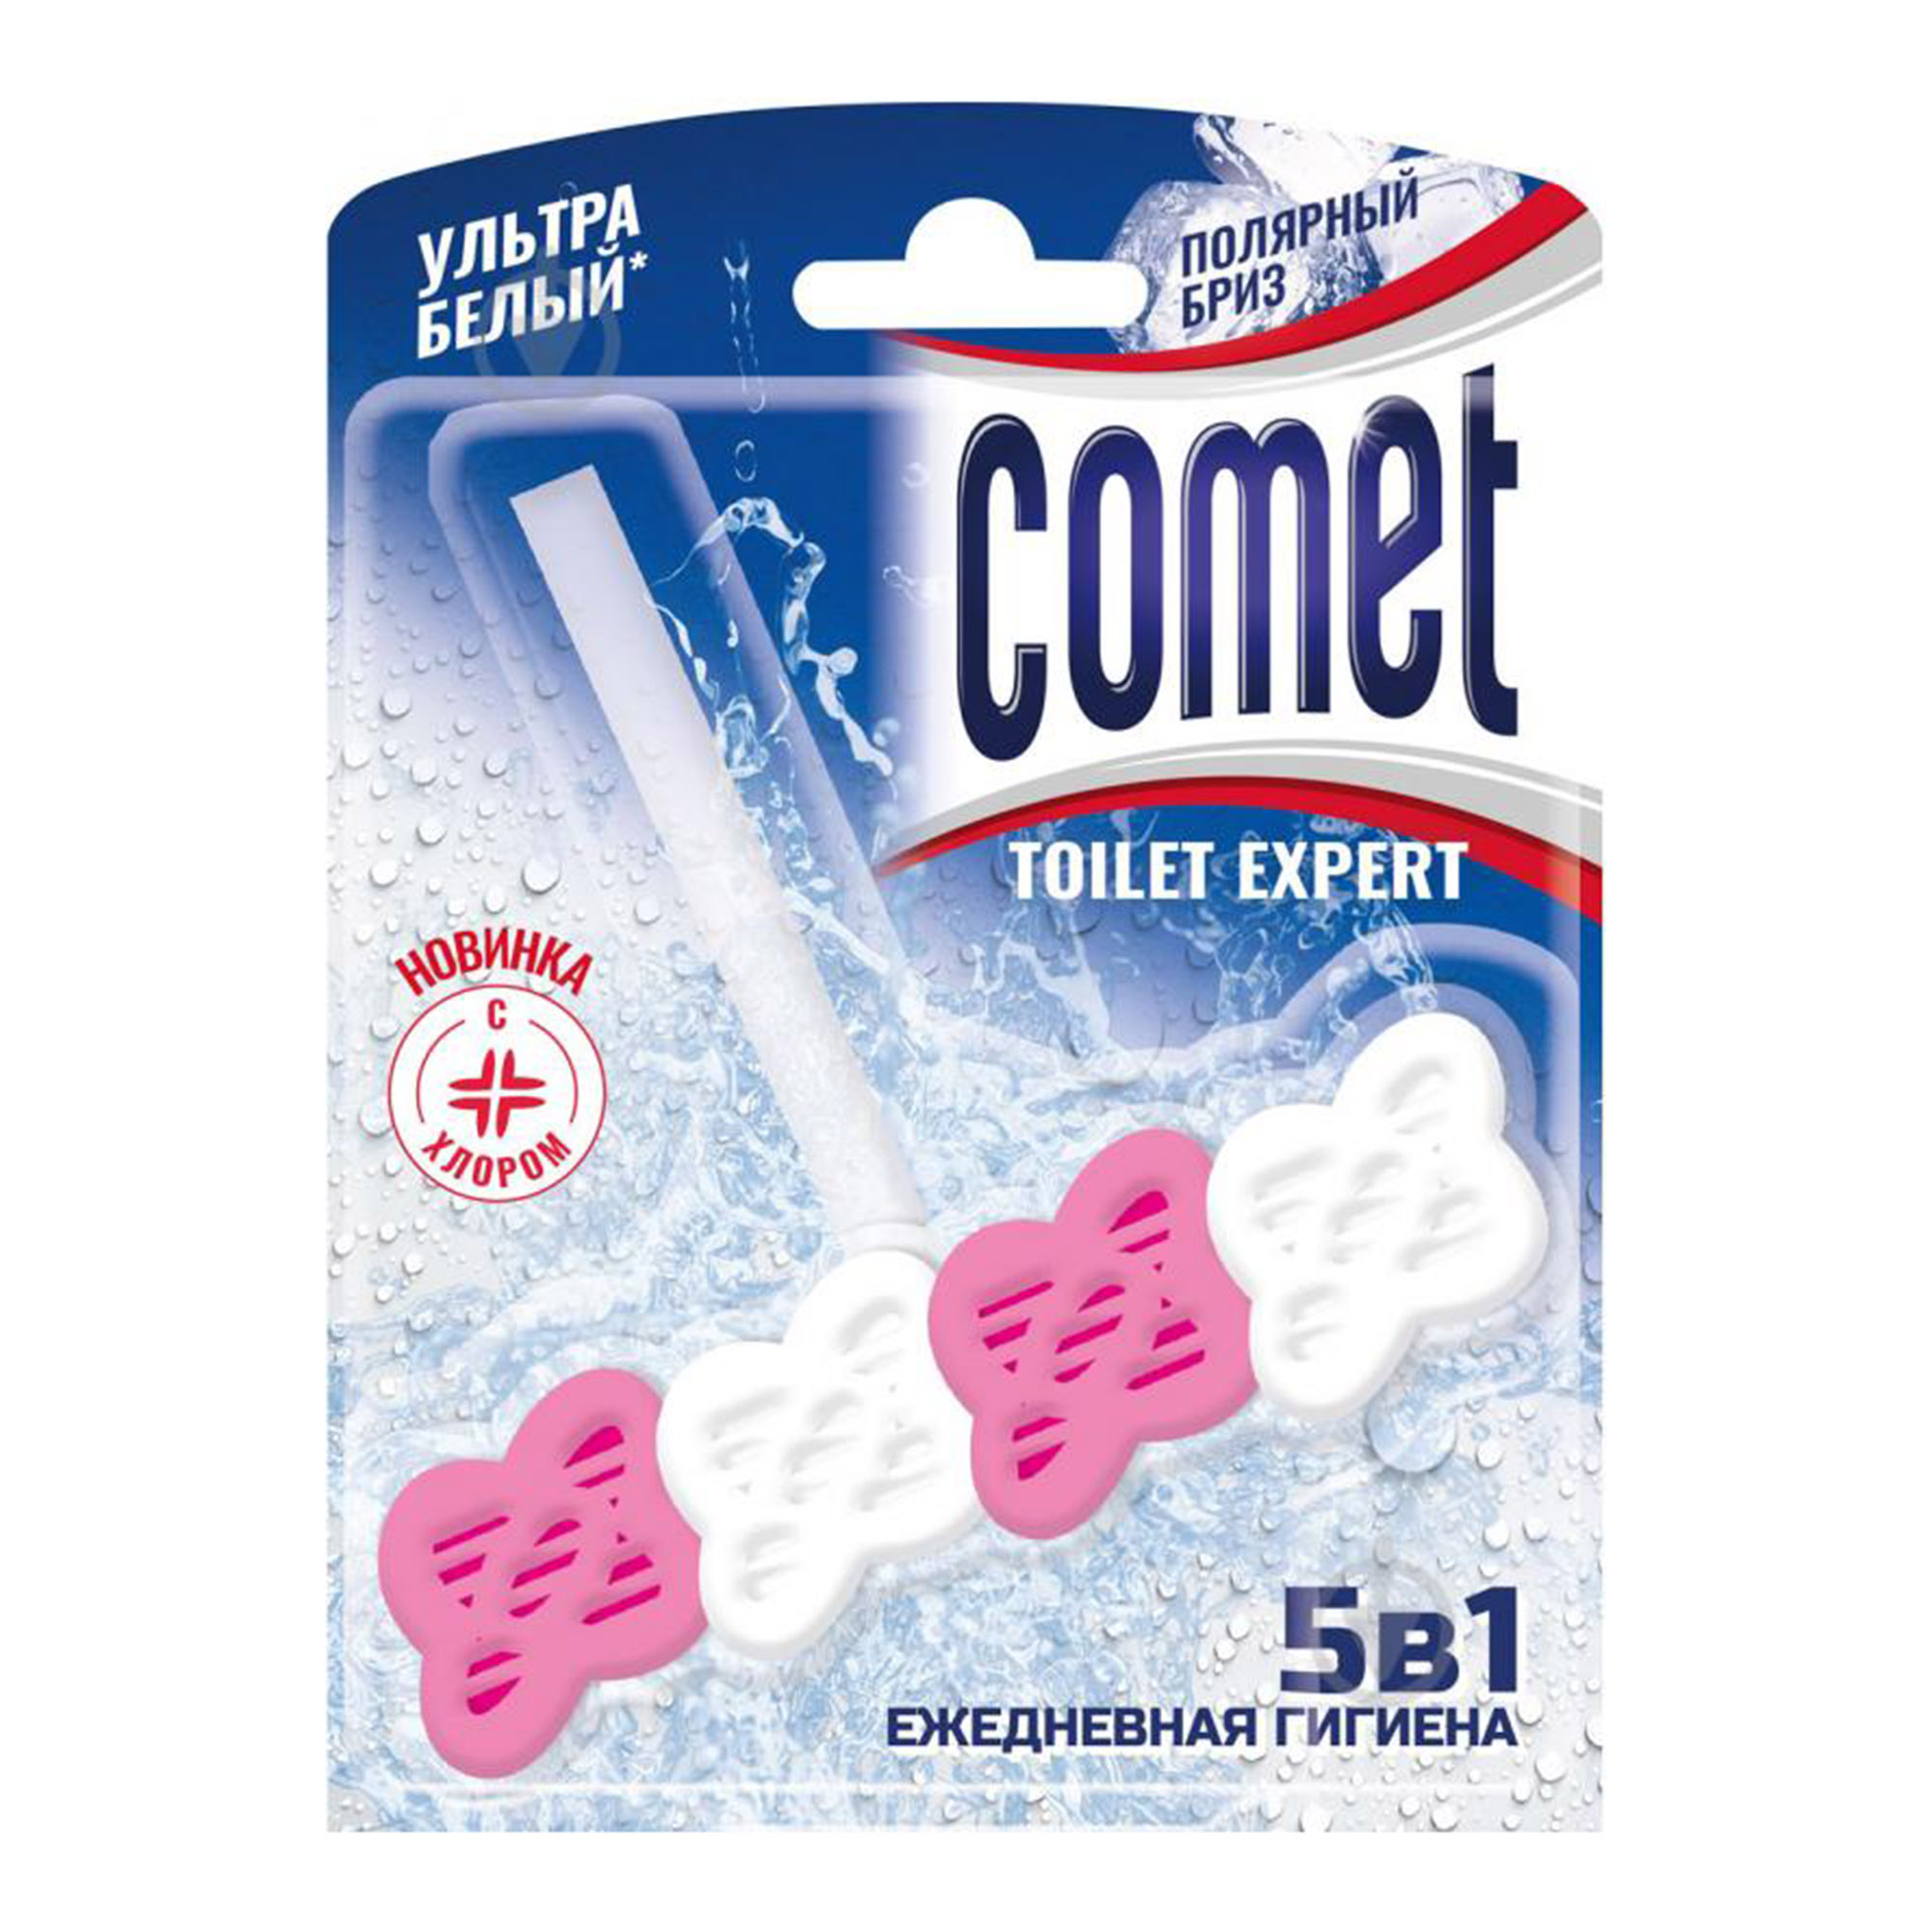 туалетный блок comet полярный бриз 48 г Туалетный блок Comet Полярный бриз 48 г